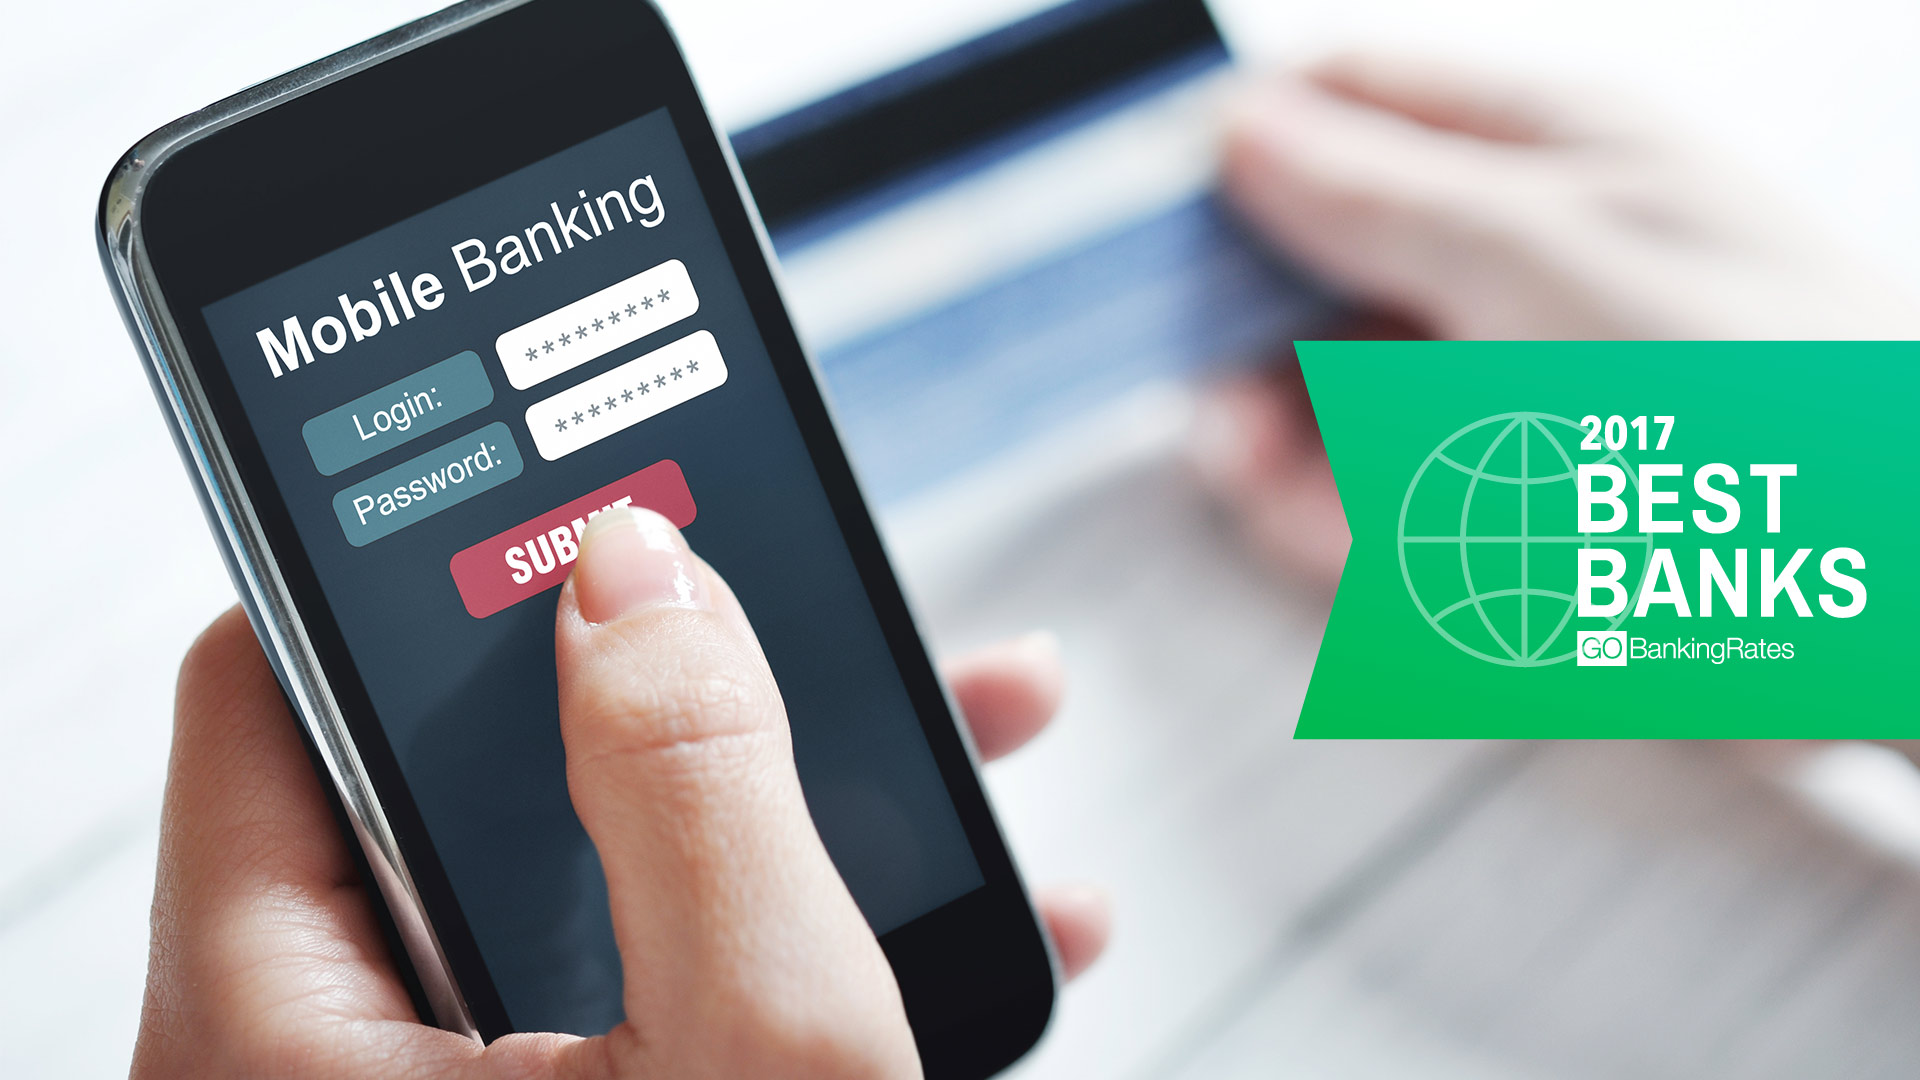 10 Best Online Banks of 2017 | GOBankingRates